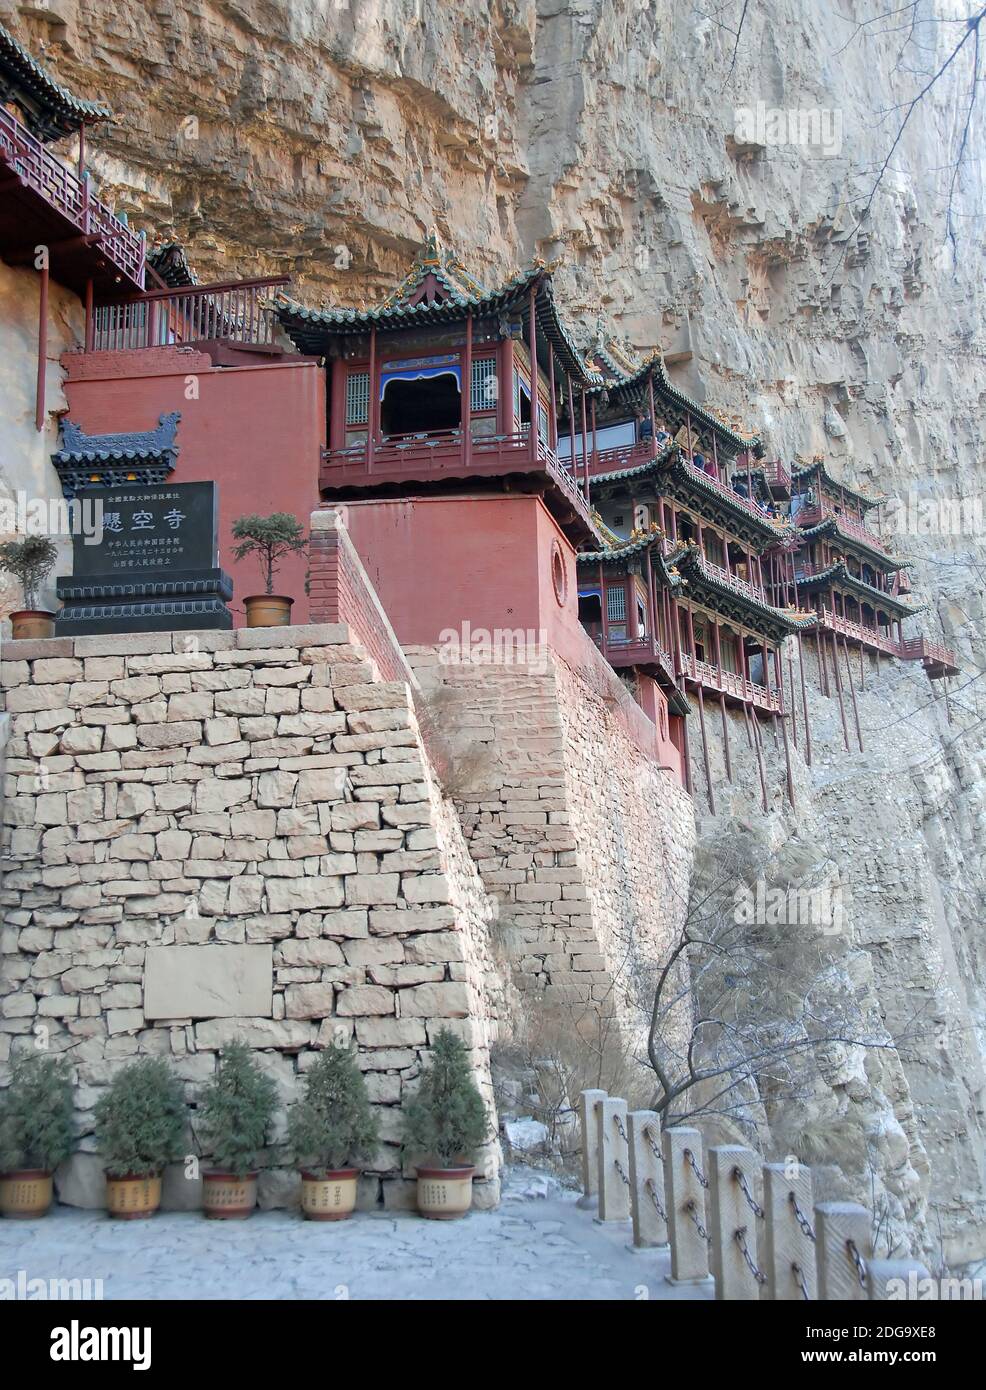 Le Temple suspendu ou Monastère suspendu près de Datong dans la province du Shanxi, en Chine. Le temple avec le signe de pierre montrant le nom du site. Banque D'Images